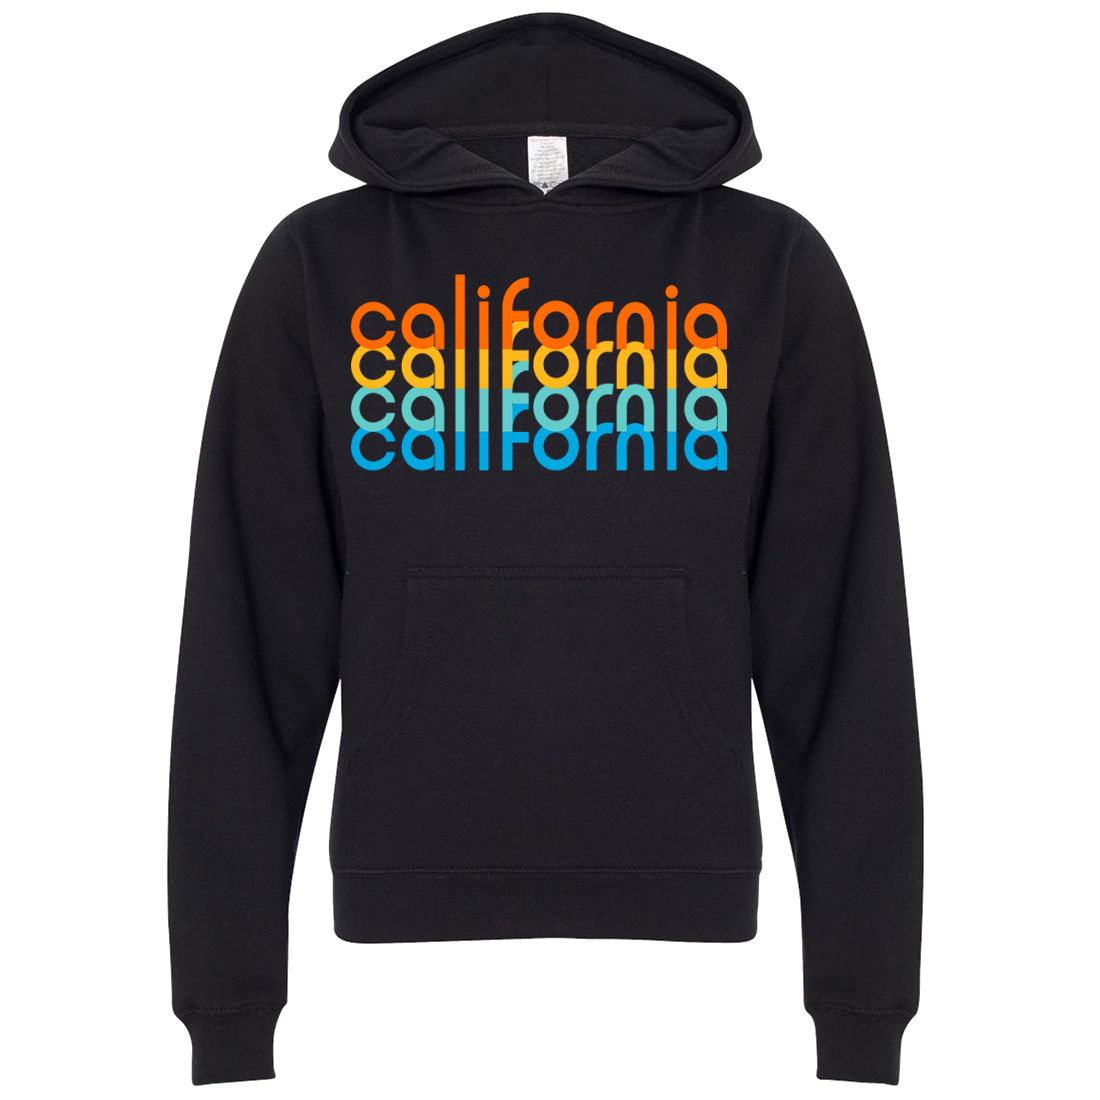 California Rainbow Stack Premium Youth Sweatshirt Hoodie